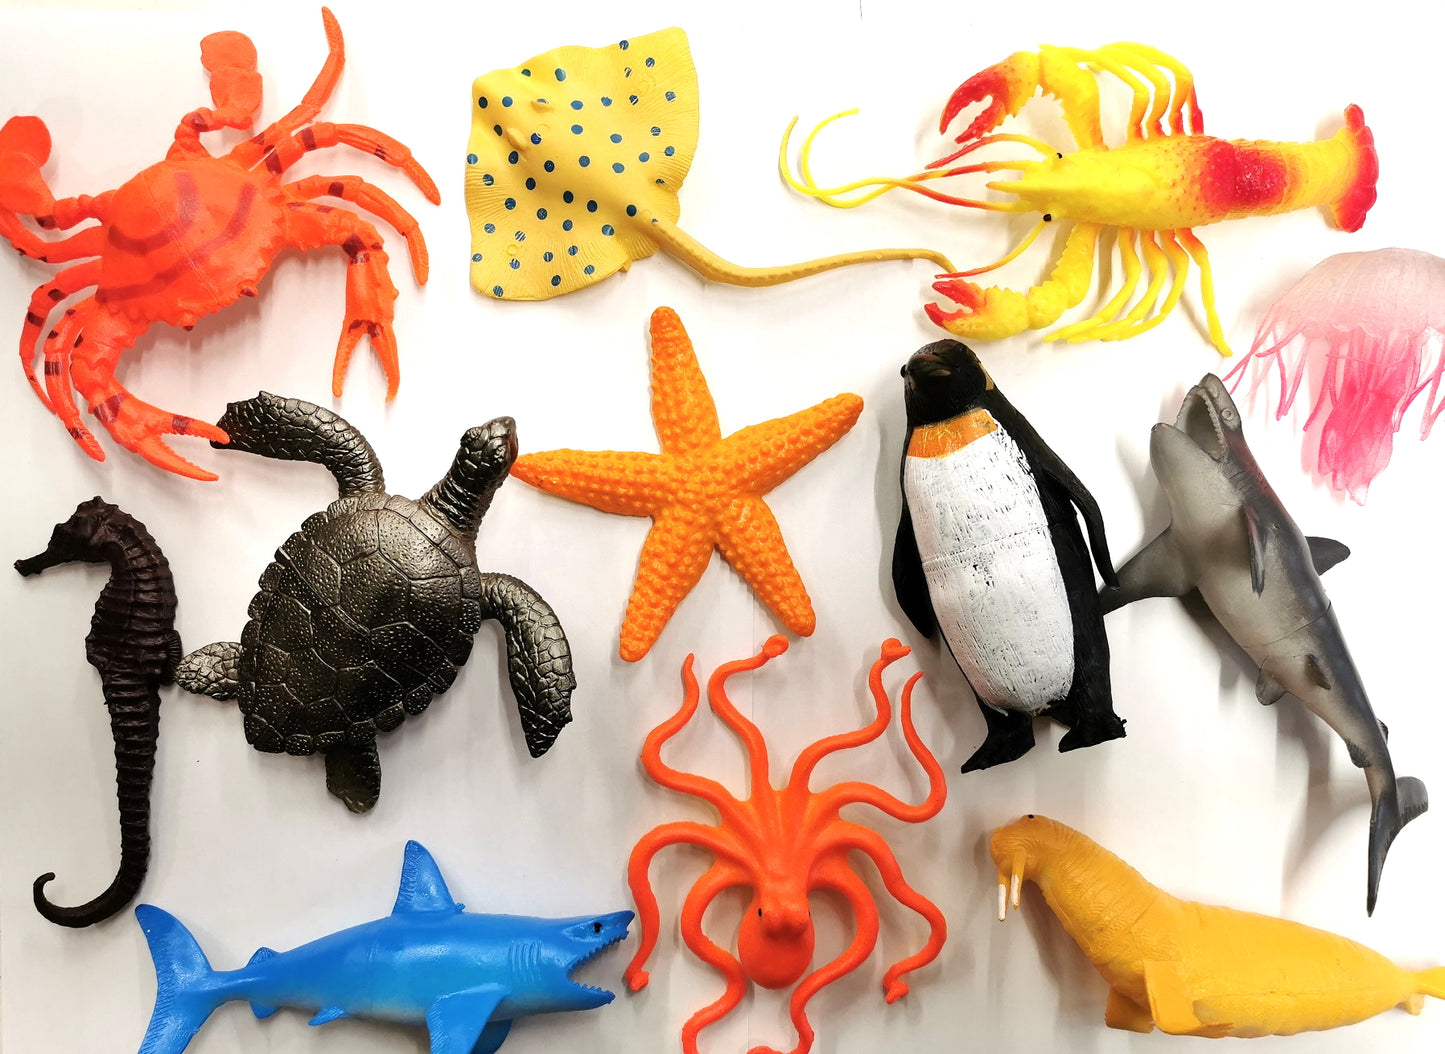 Animal marin - Jouet créature marine en plastique - Modèles assortis